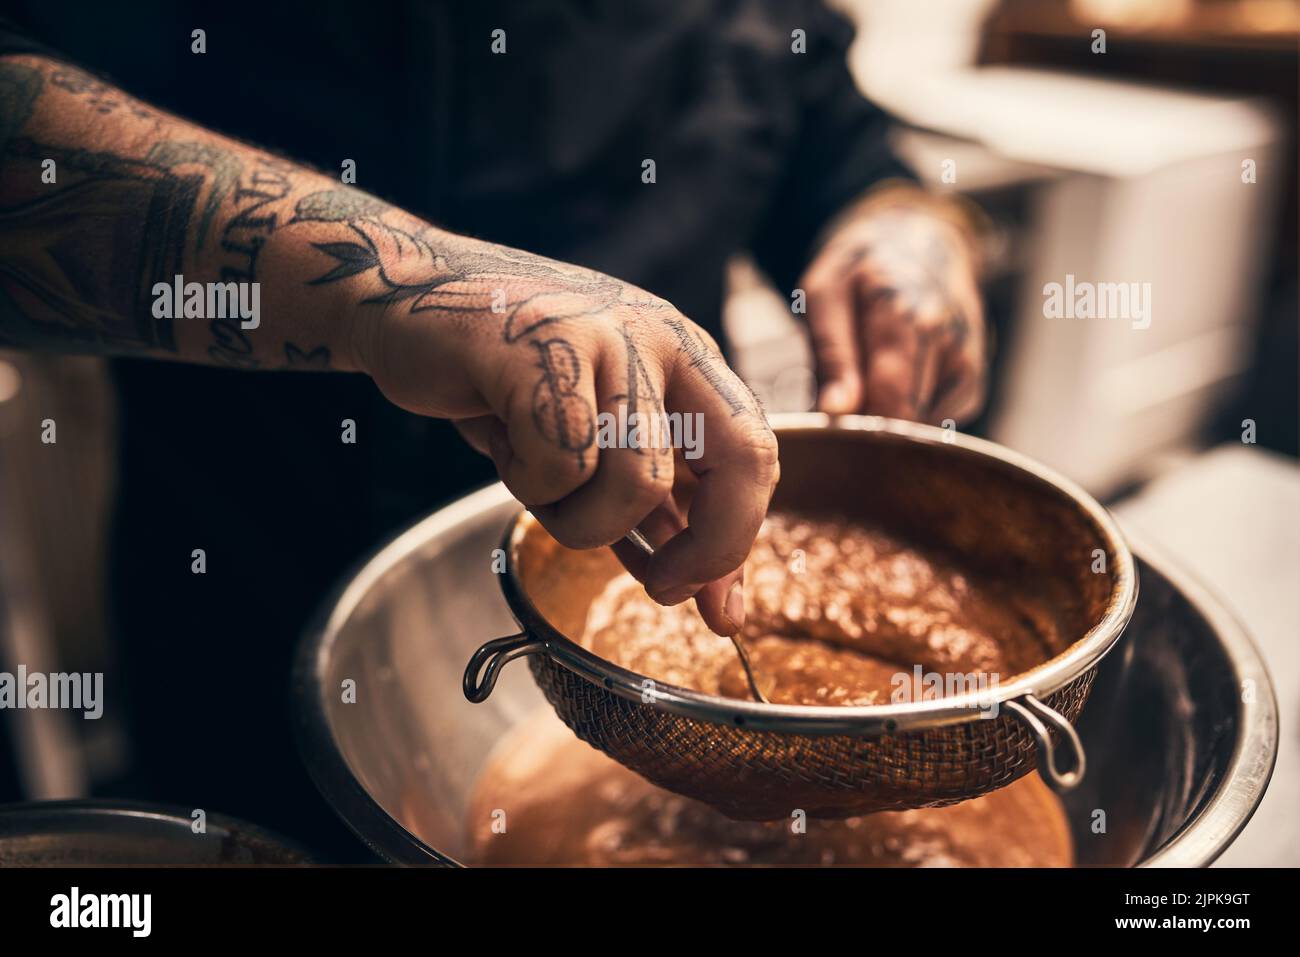 La meilleure nourriture est faite avec du travail dur. Gros plan d'un chef méconnu tatoué les mains en train de mettre la nourriture dans un bol de la cuisine d'un restaurant. Banque D'Images